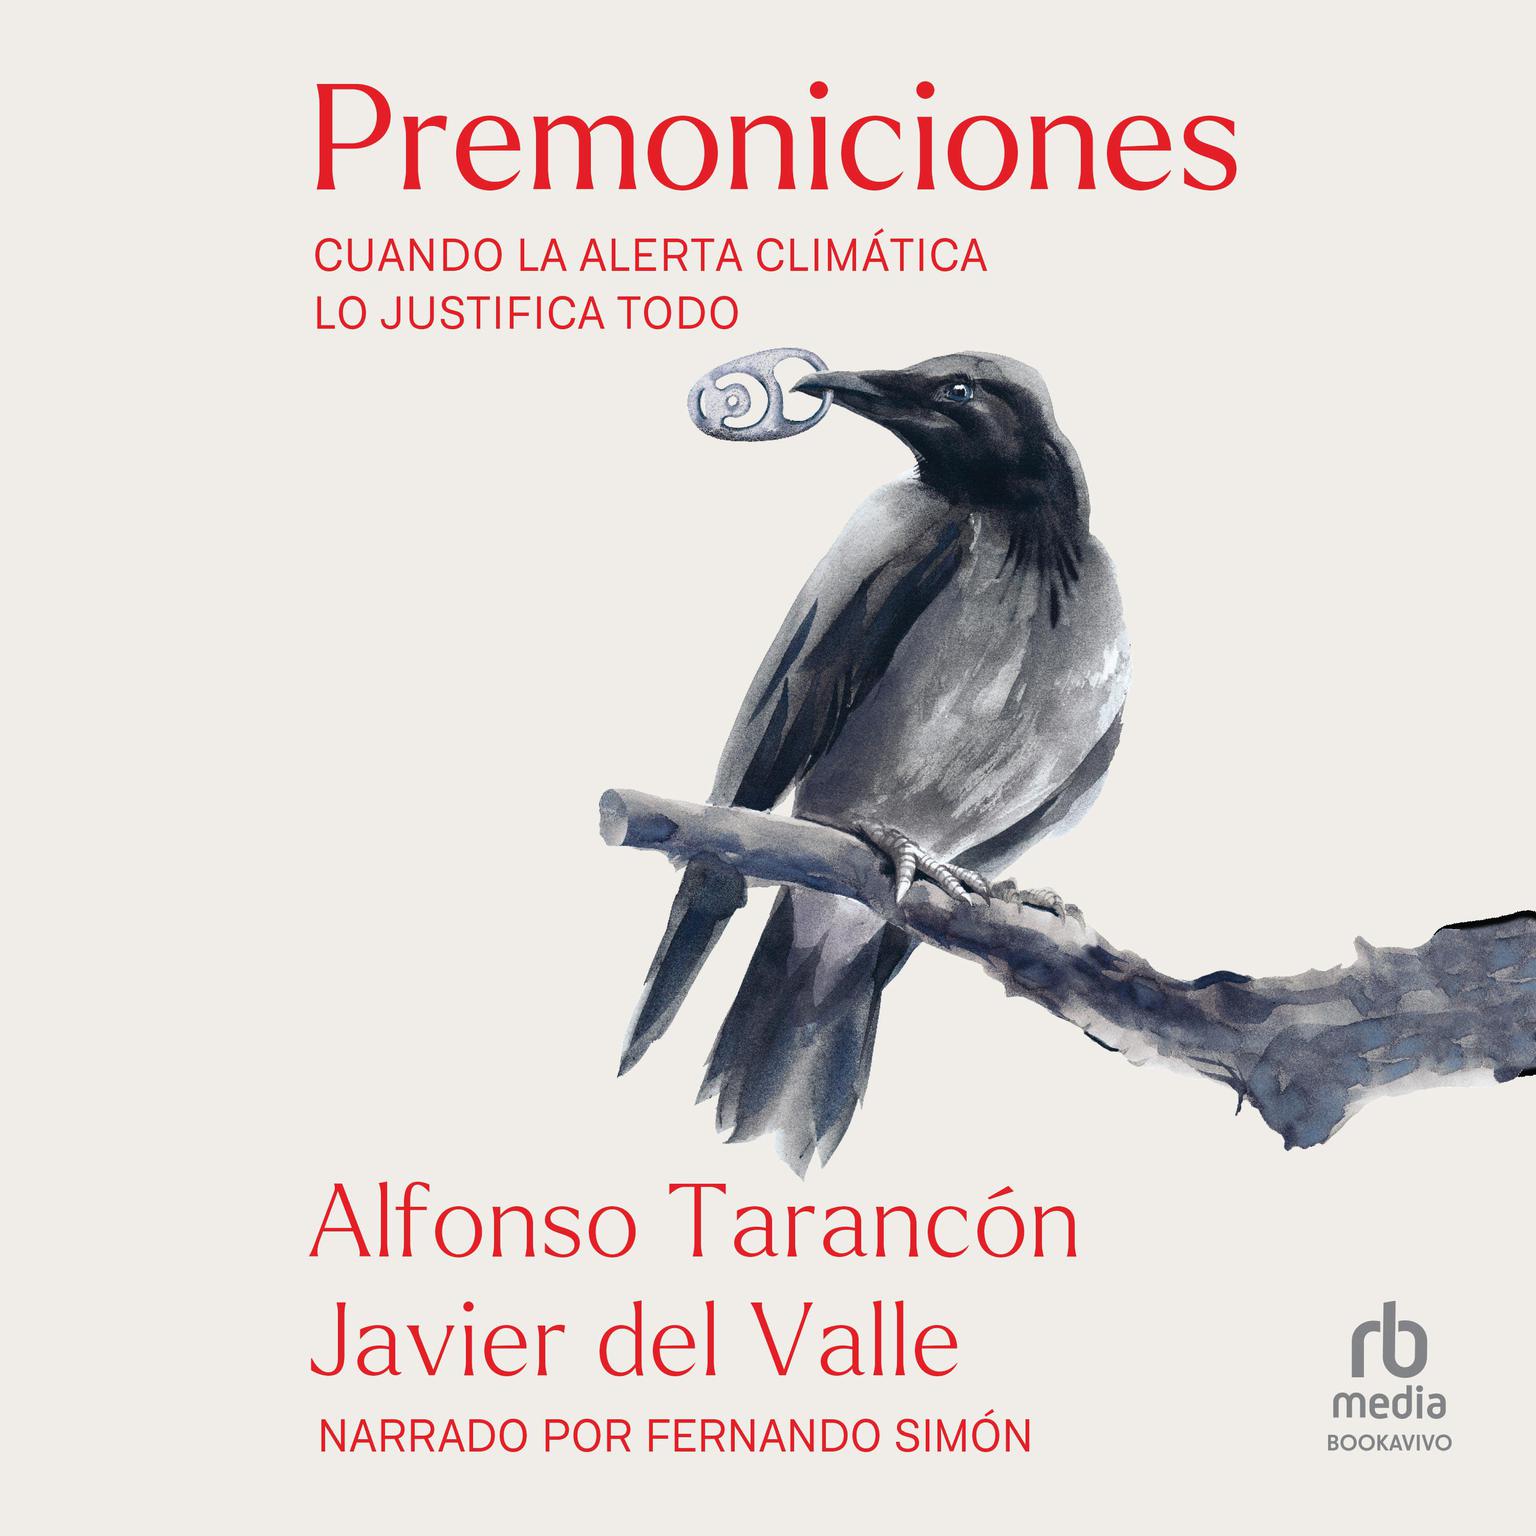 Premoniciones (Premonitions): Cuando la alerta climática lo  justifica todo (When the Climate  Alert Justifies Everything) Audiobook, by Alfonso Tarancón